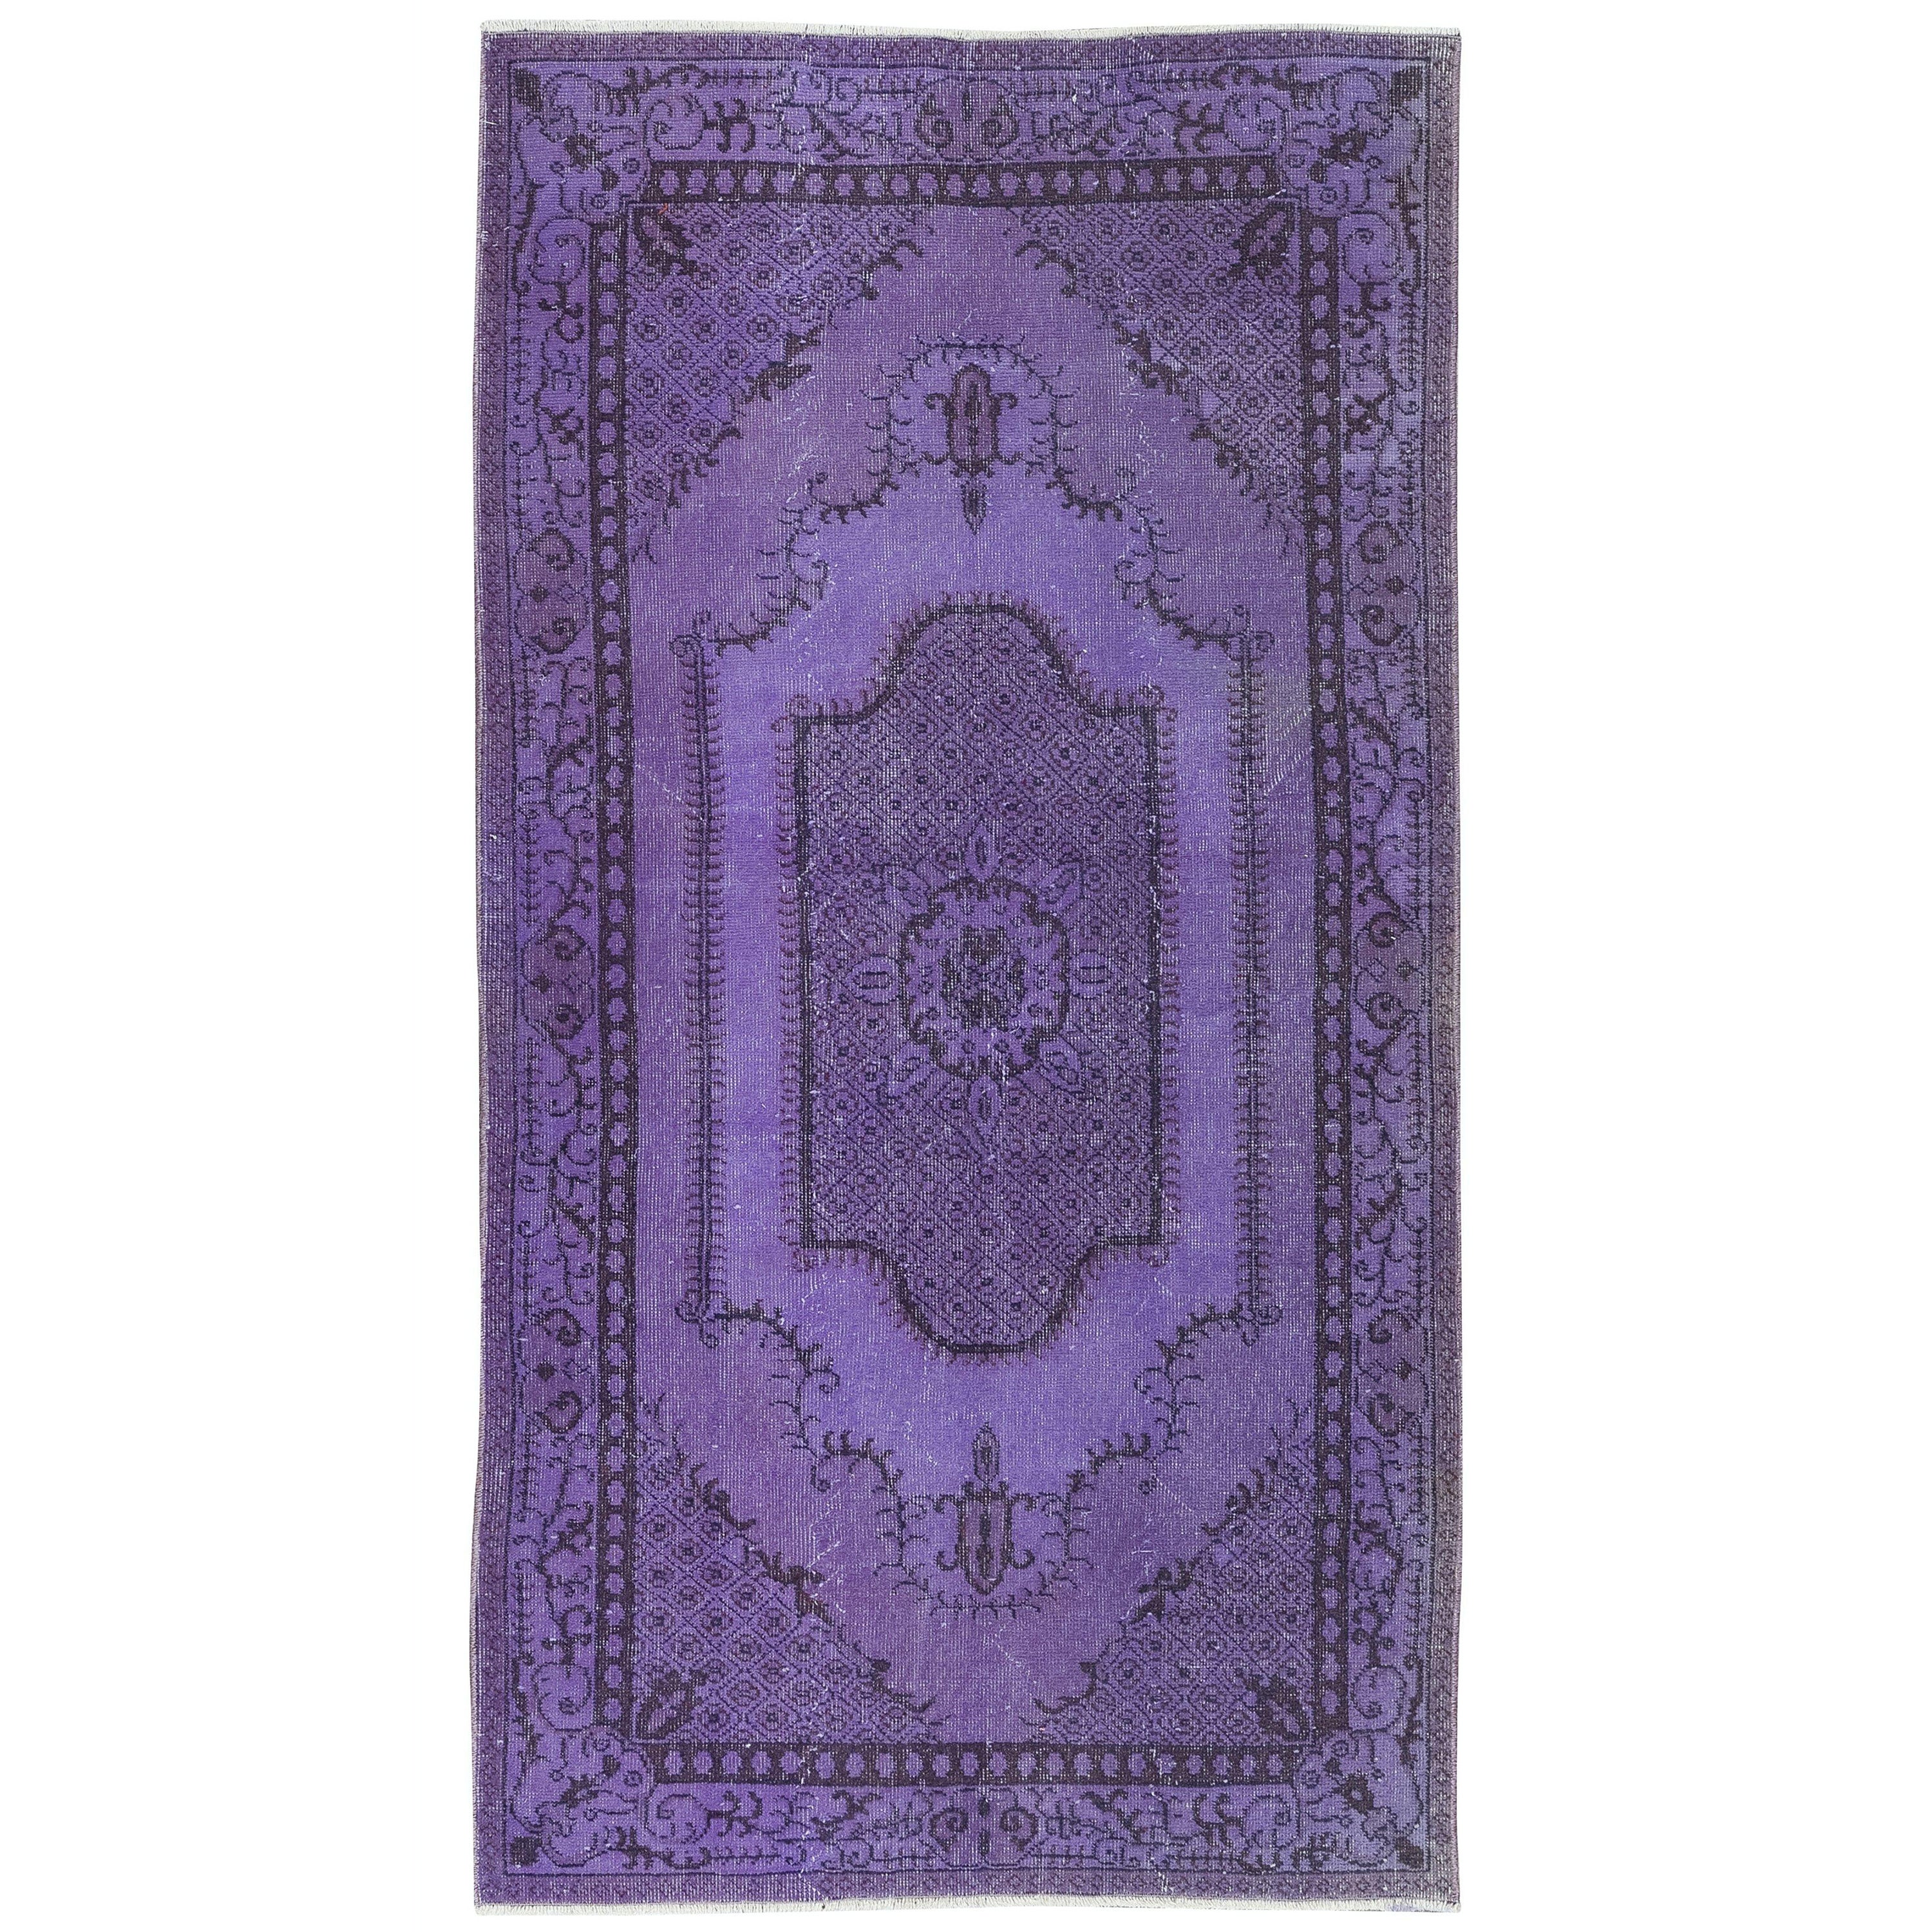 3.7x7 Ft Violett Lila Handgefertigter kleiner Teppich aus der Türkei, Great 4 Moderne Inneneinrichtung im Angebot